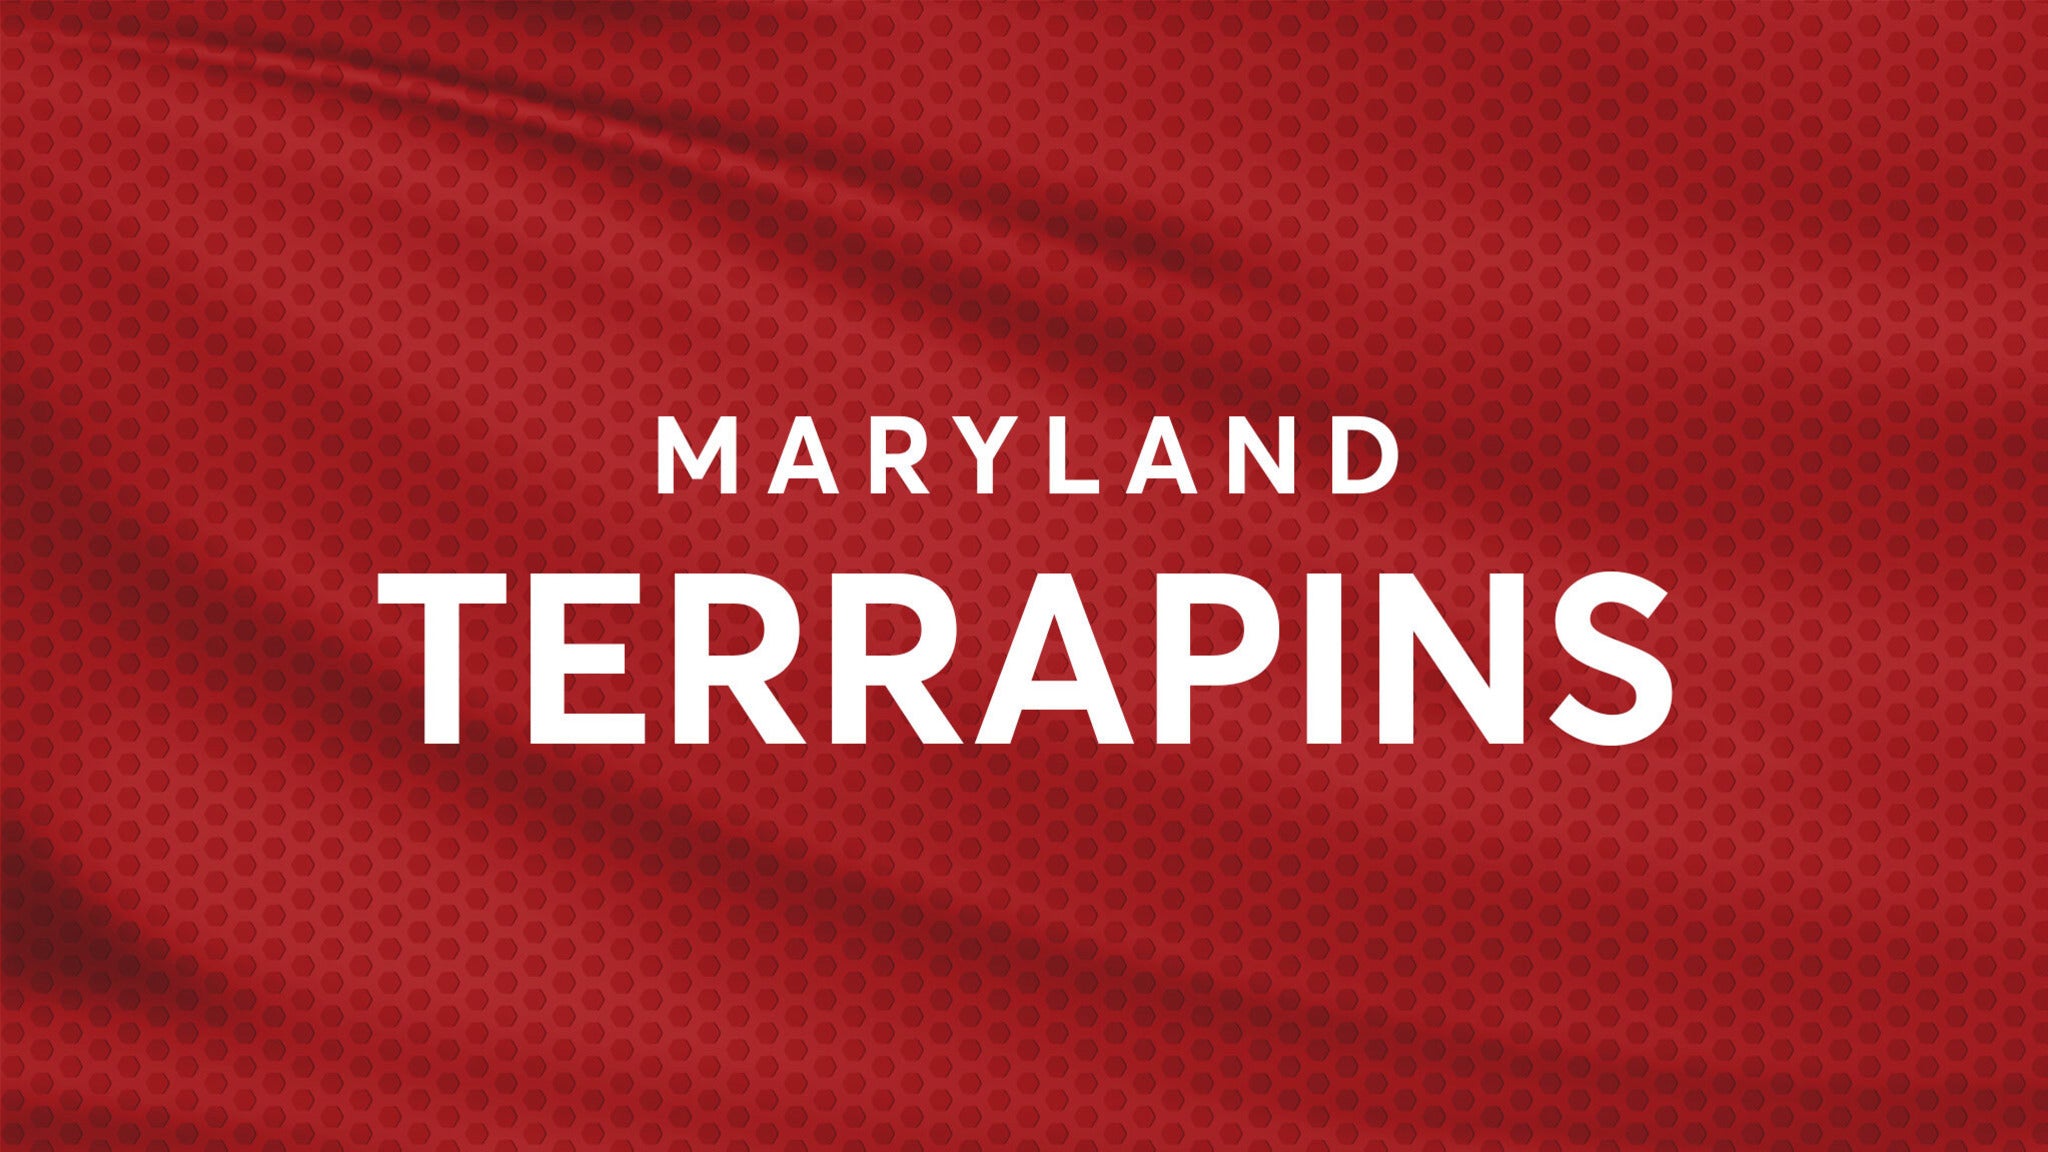 Maryland Terrapins Men?s Soccer vs. University of Virginia Men's Soccer in Washington promo photo for Audi Field Priority presale offer code